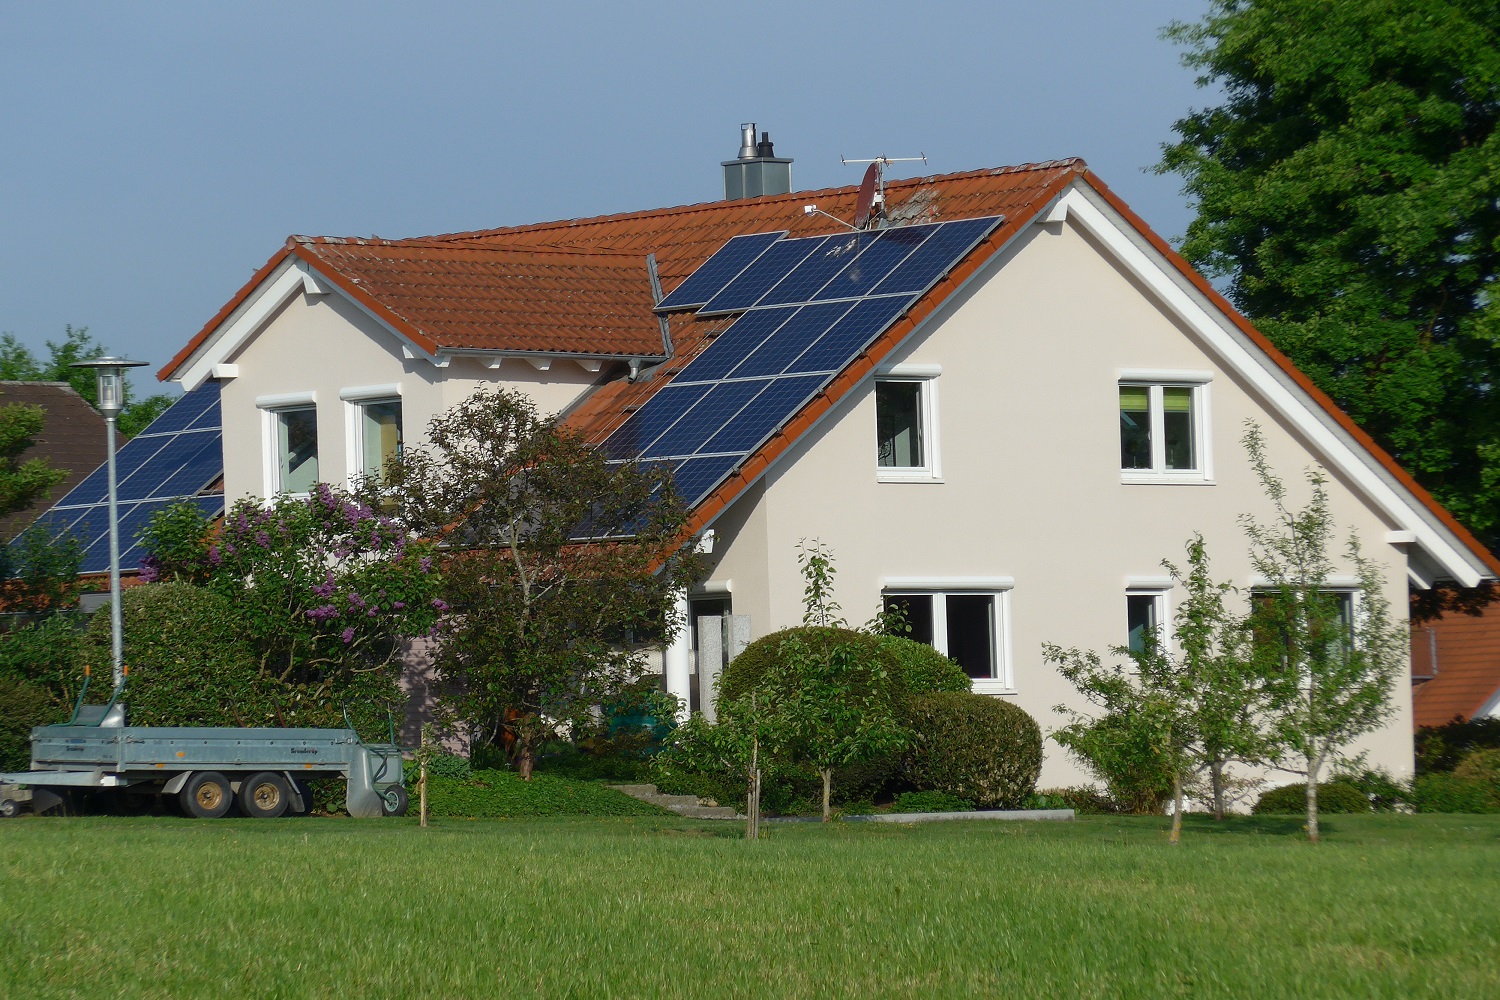 https://www.energiezukunft.eu/fileadmin/user_upload/Bilder/Erneuerbare_Energien/solar_dachanlage_hcn.JPG